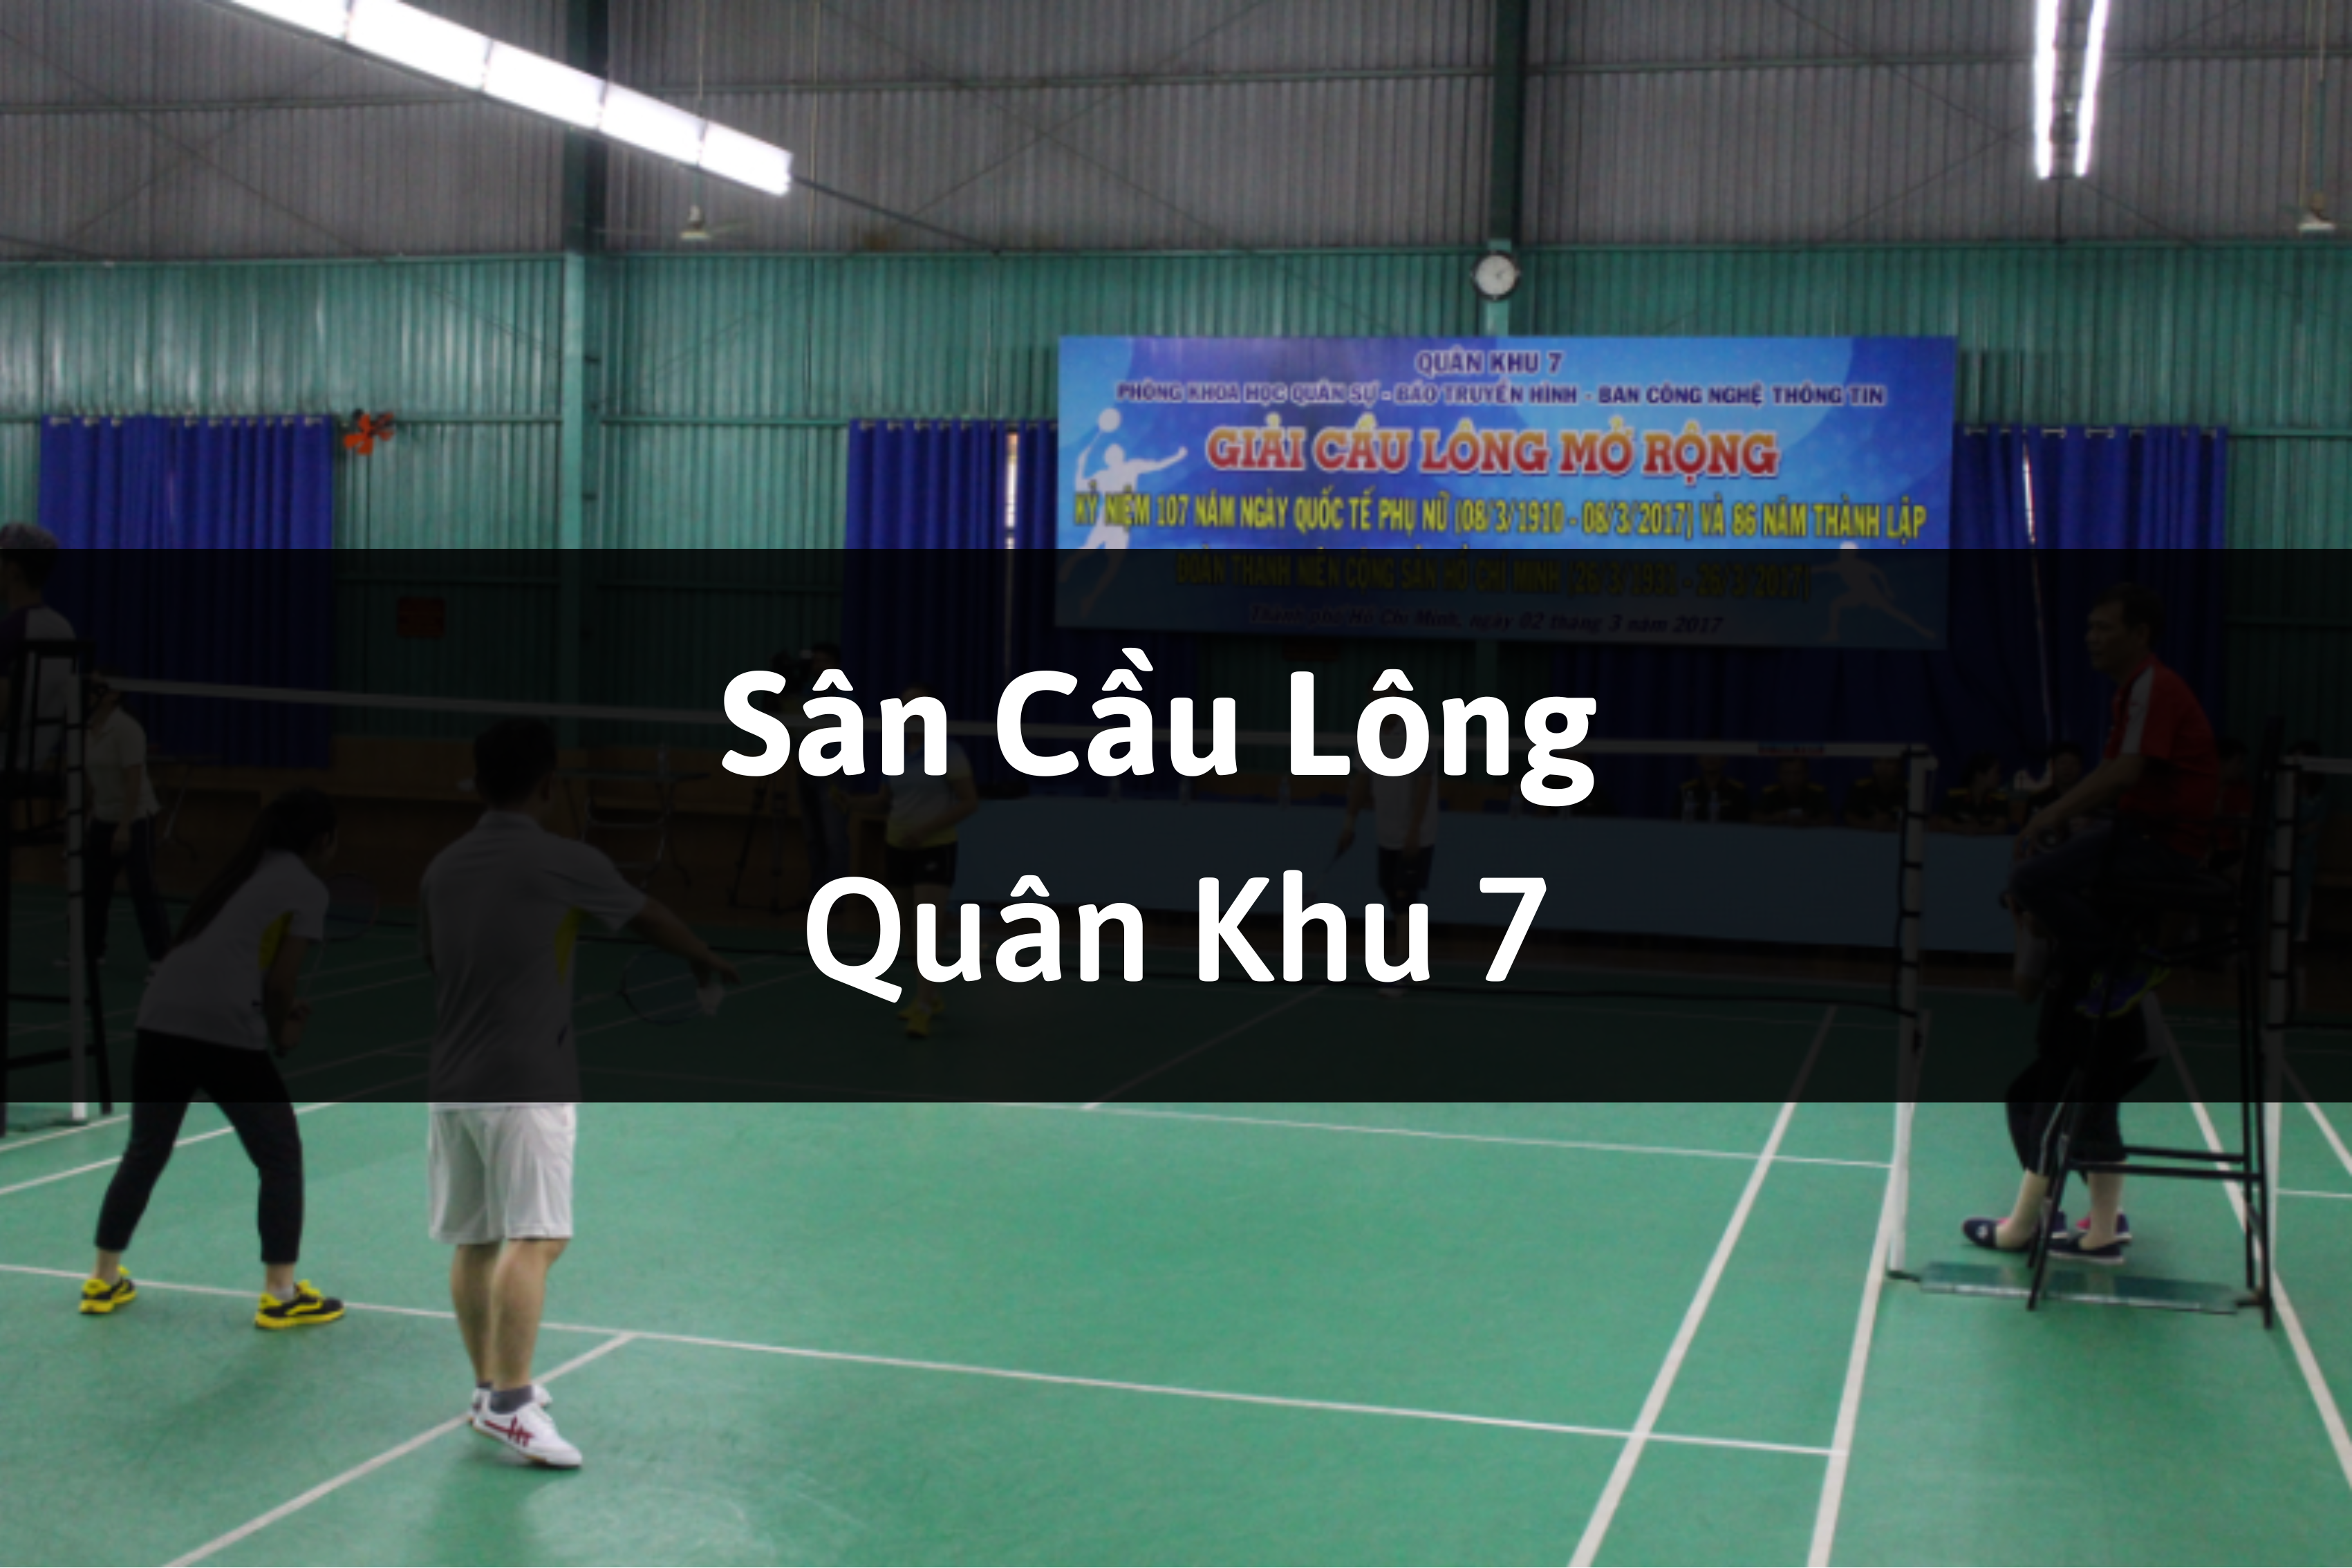 Sân cầu lông Quân Khu 7 Tân Bình, Quận Phú Nhuận, Thành phố Hồ Chí Minh